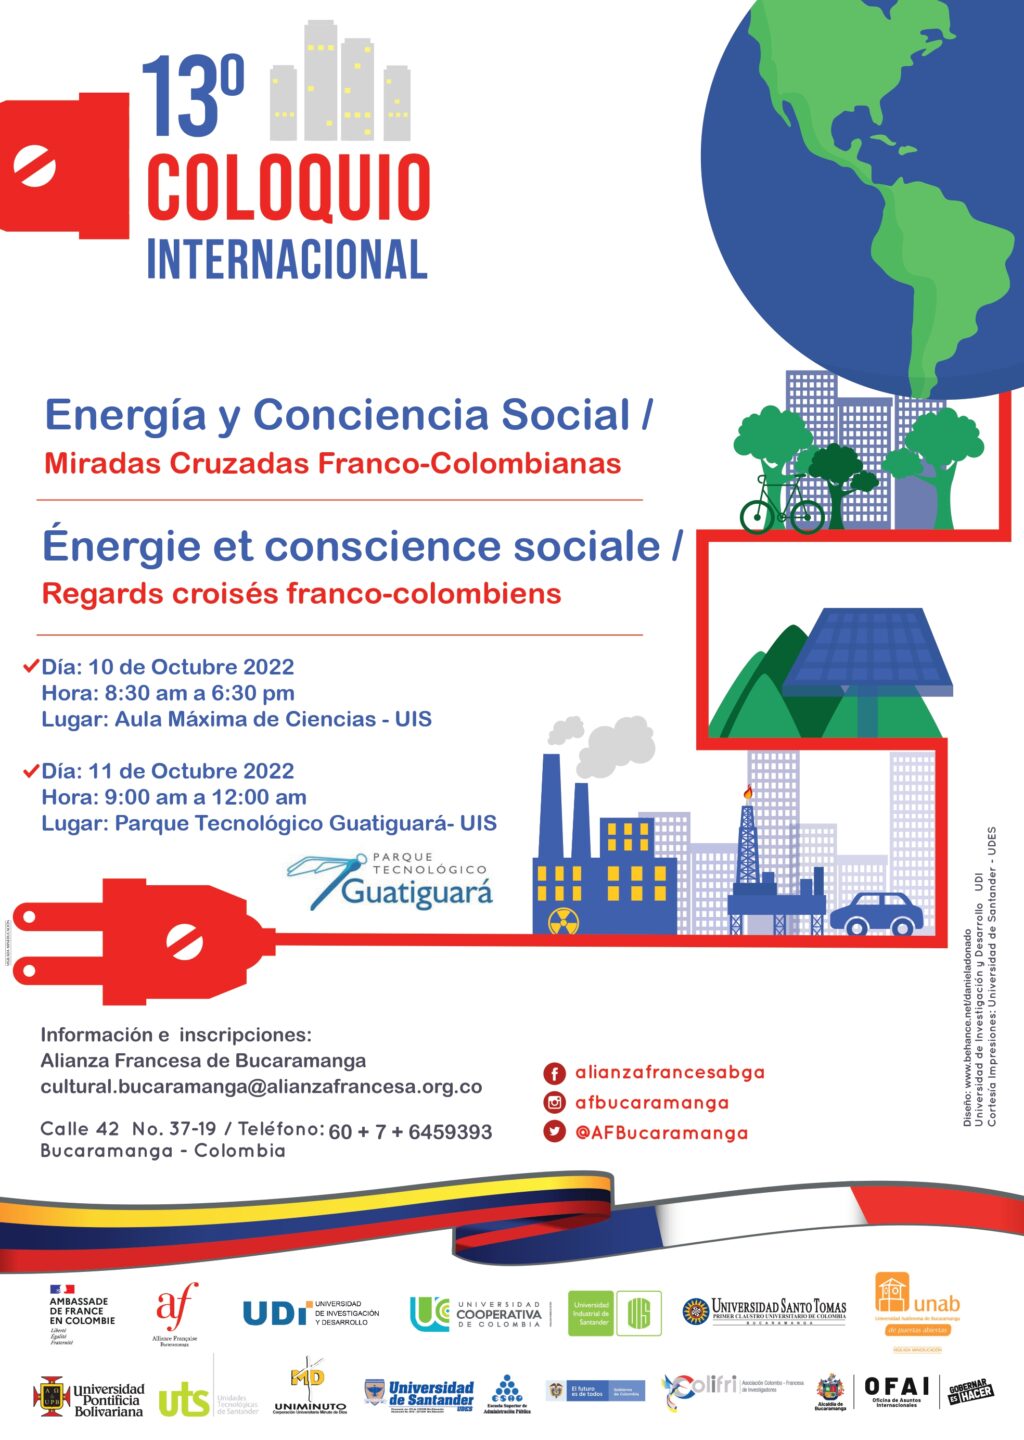 Imagen muestra banner o afiche del 13o Coloquio Internacional Energía y Conciencia Social